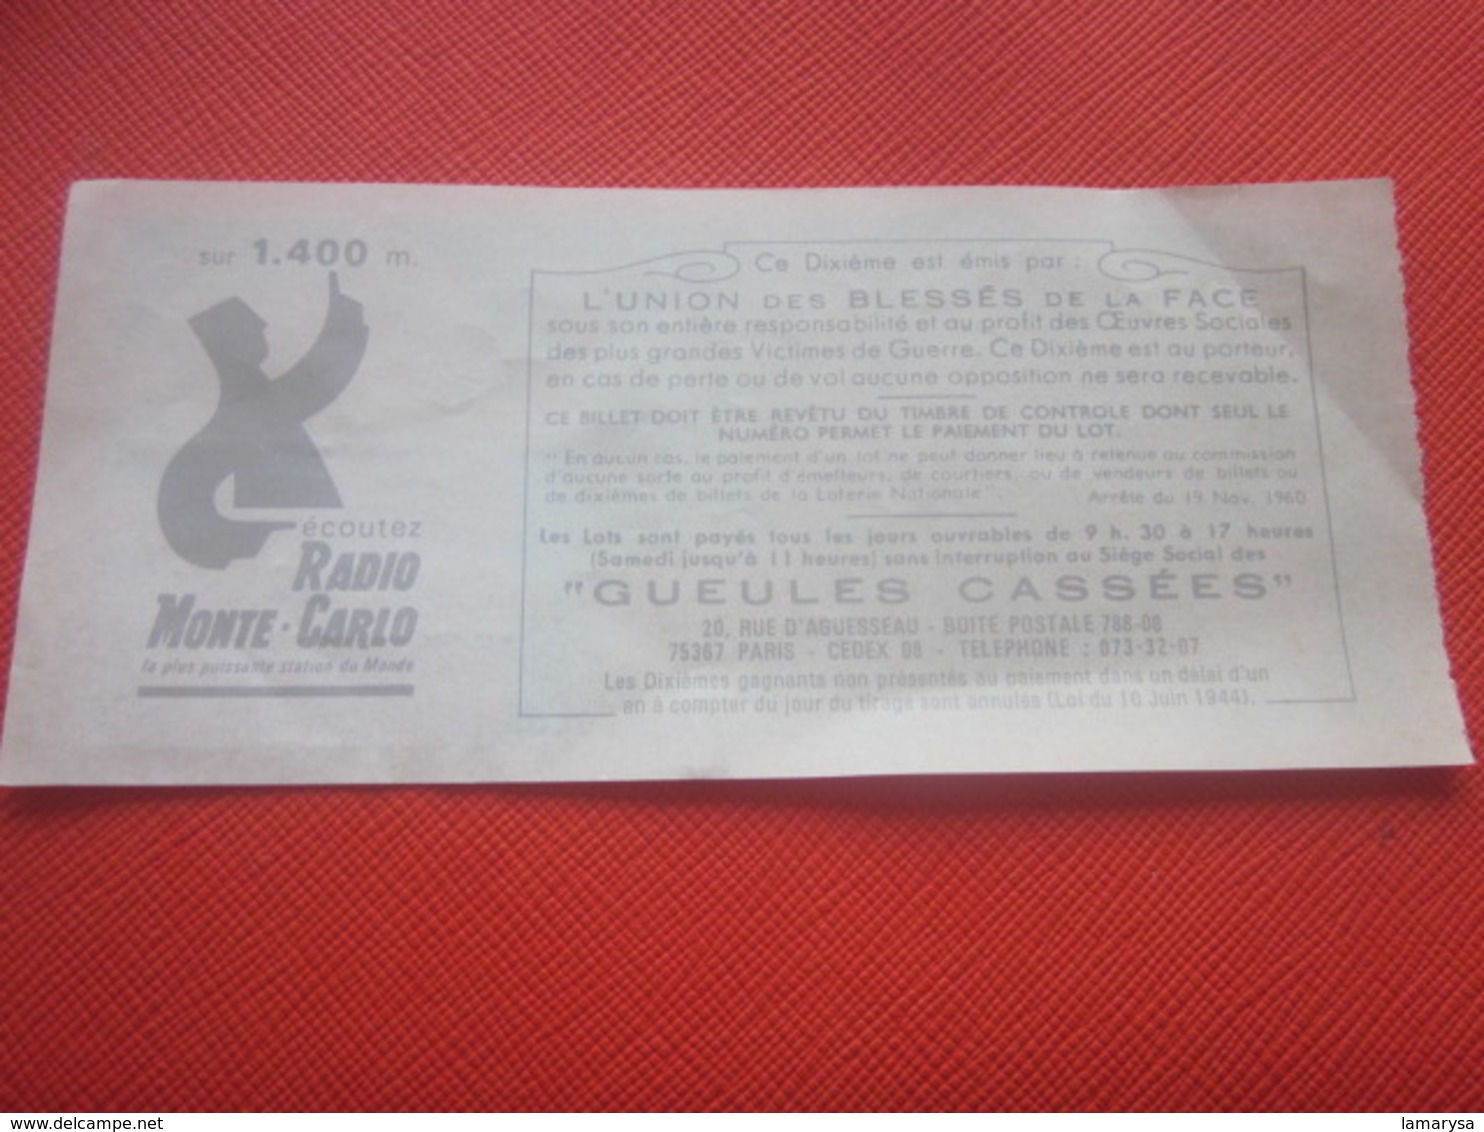 1976-1/10é FÊTE DES MÈRES-LES GUEULES CASSÉES Billet De La Loterie Nationale+VIGNETTE-IMPRIMÉE TAILLE DOUCE - Billets De Loterie